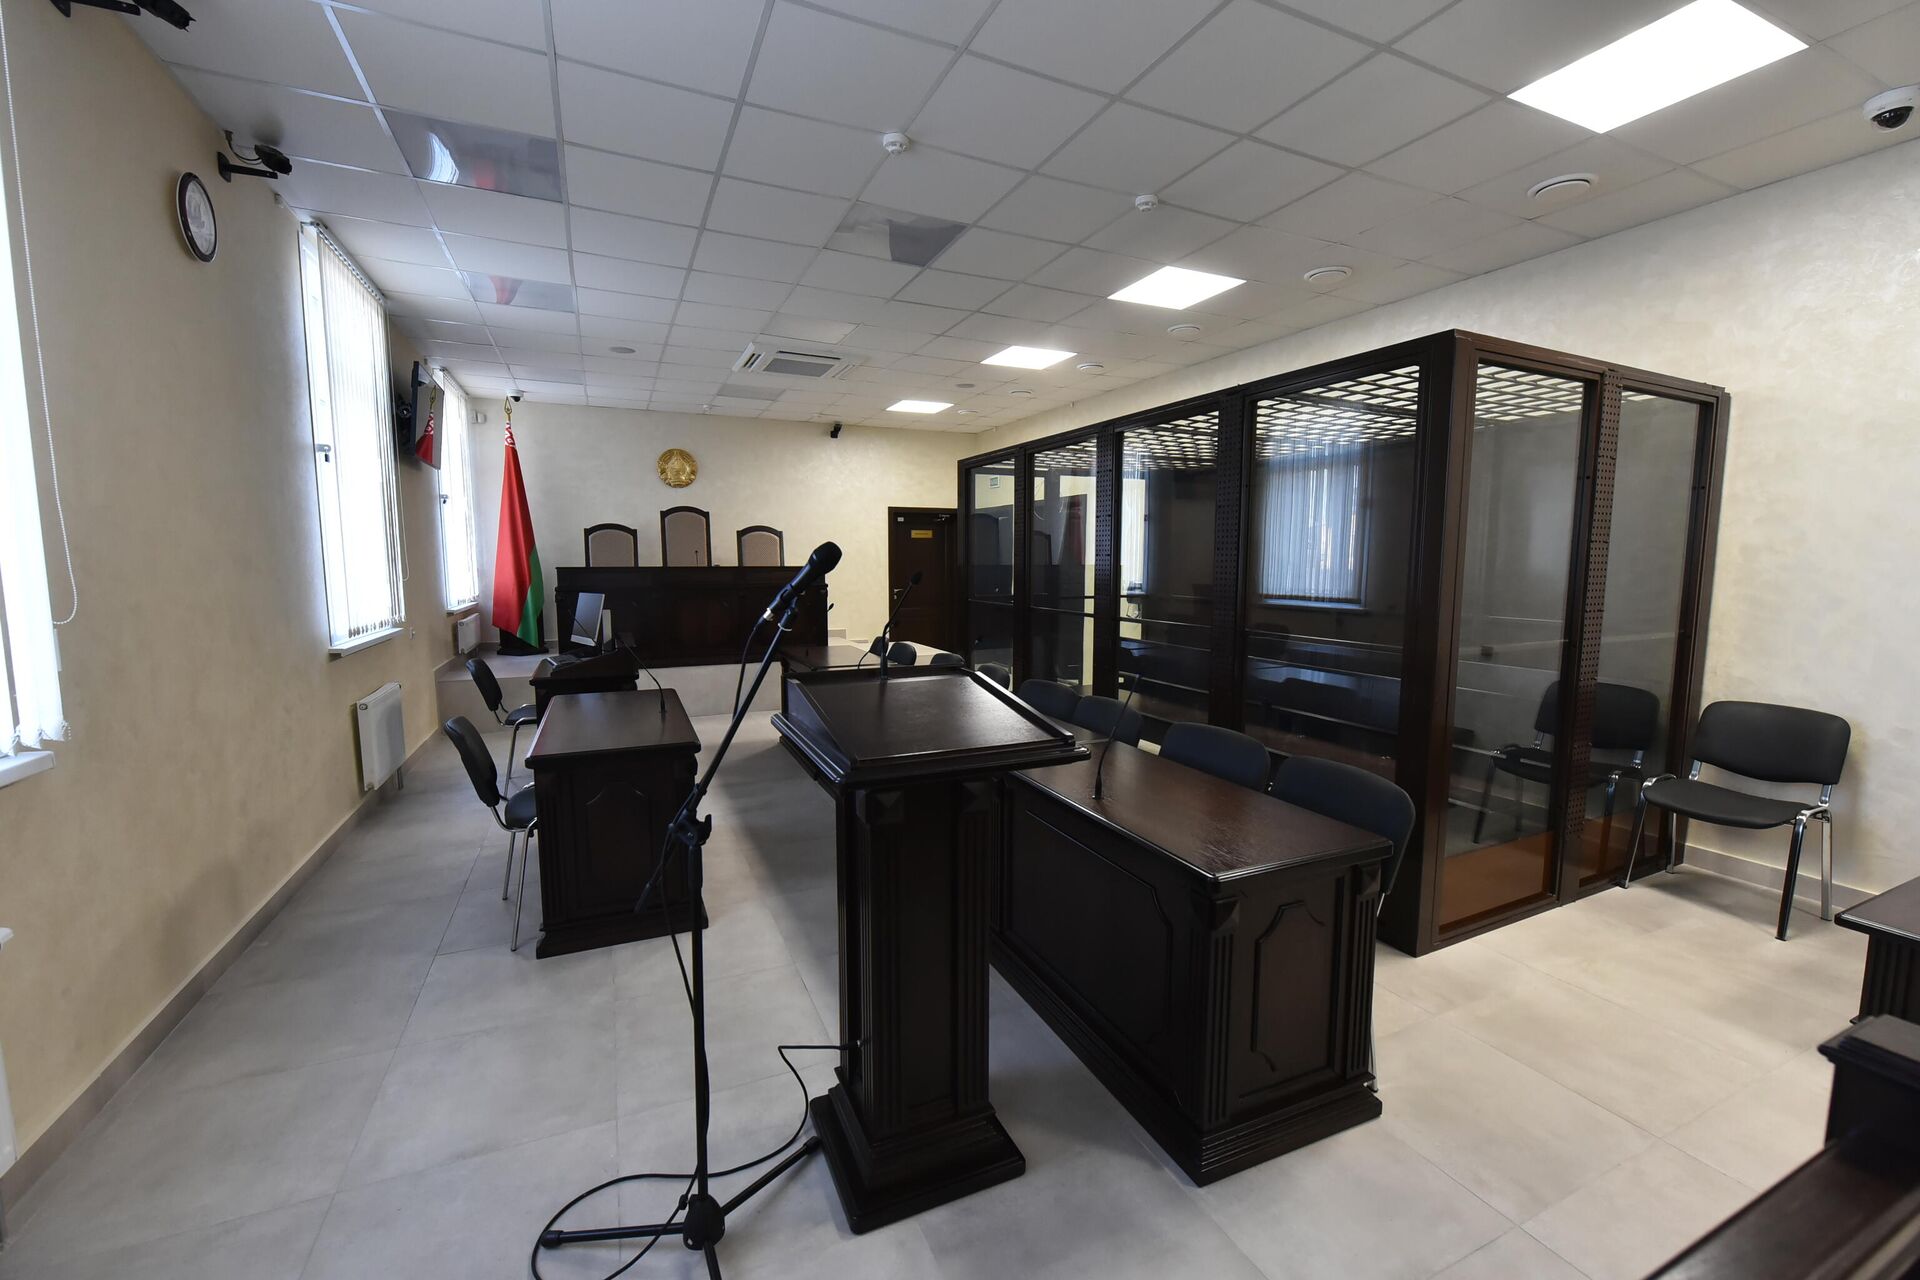 Судебные залы в новом здании оборудованы современными системами для аудио- и видеозаписи процессов.  - Sputnik Беларусь, 1920, 05.11.2021